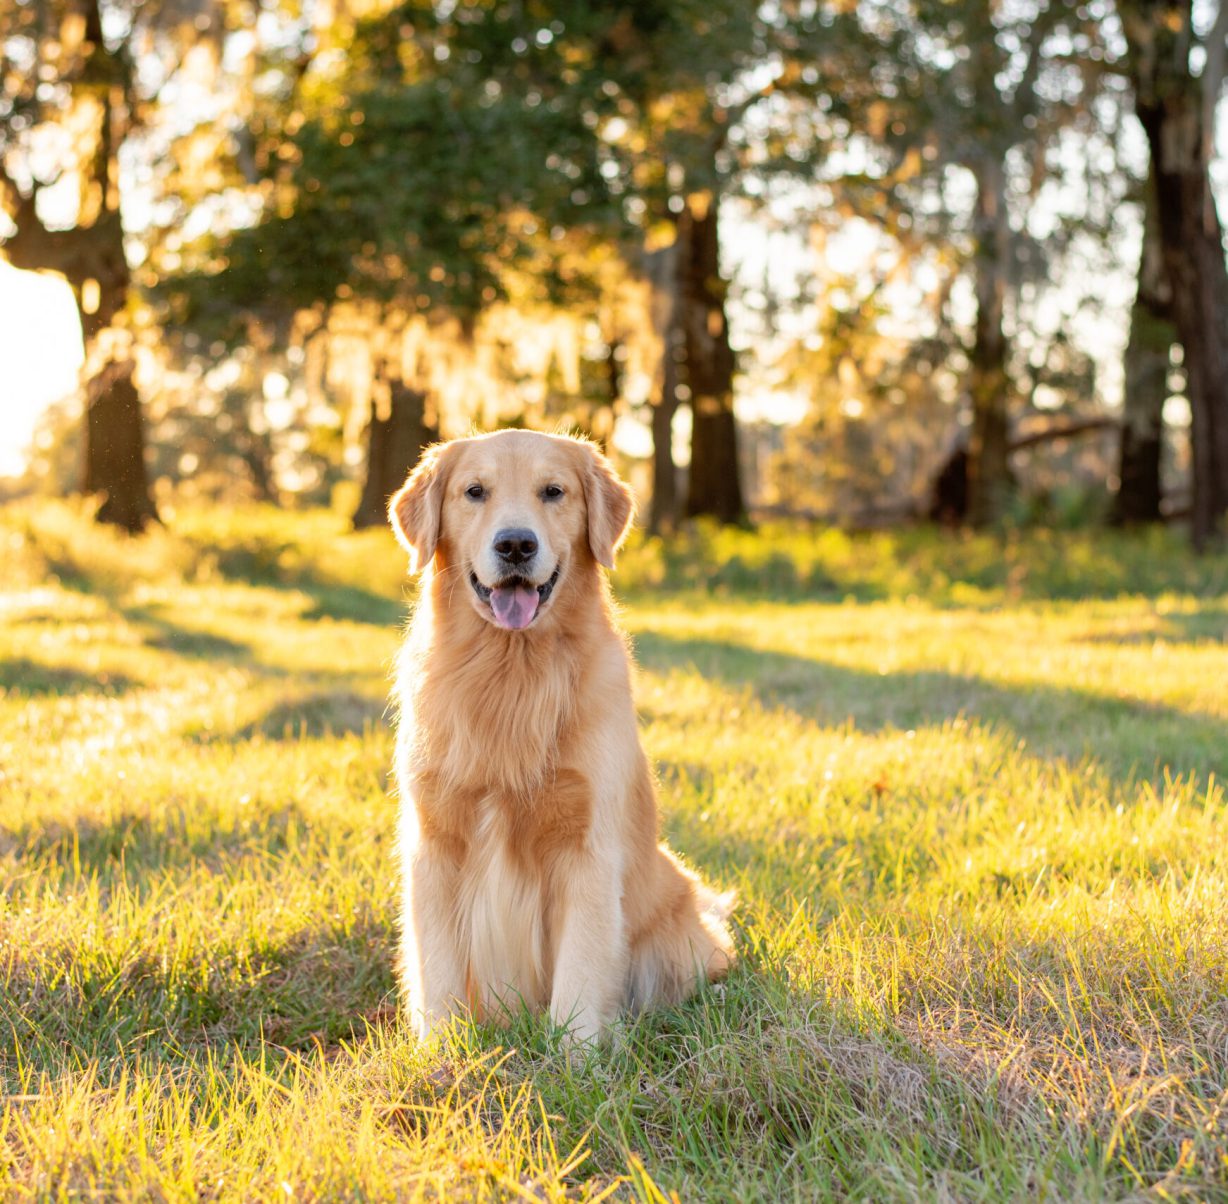 Golden Retriever dog enjoying outdoors at a large grass field at